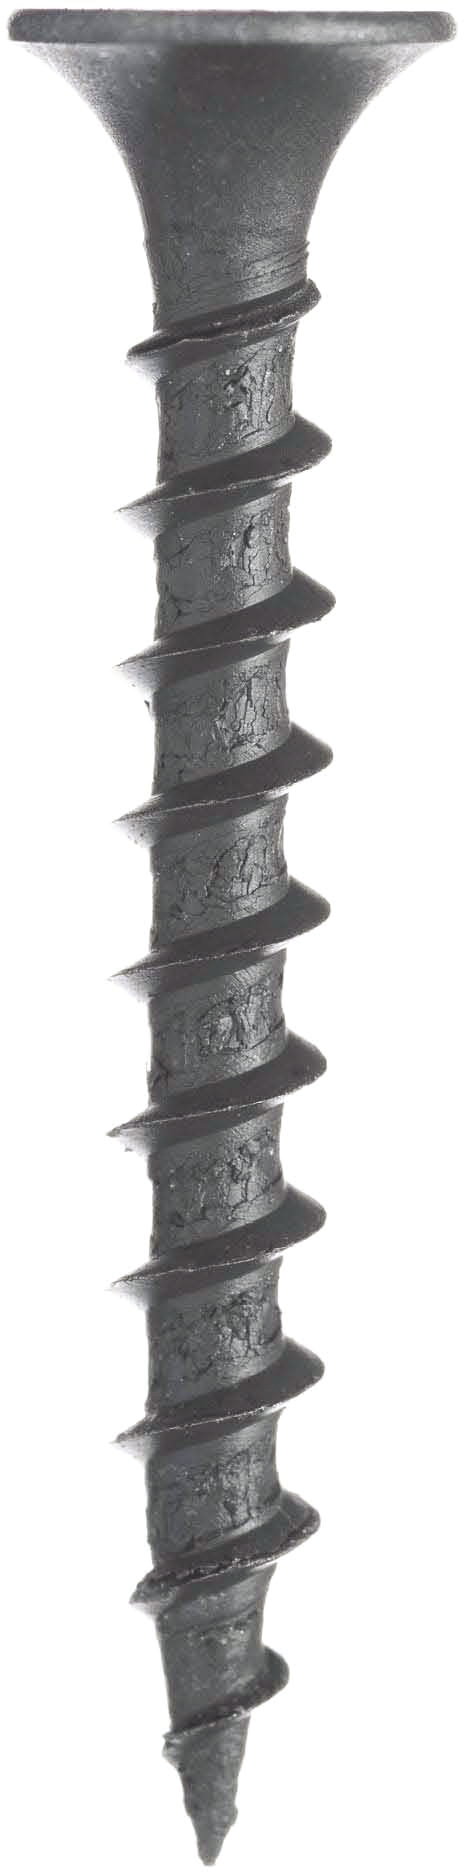 Schnellbauschraube Grobgewinde Trompetenkopf PH Stahl phosph grau 3,9x30-100 Stk